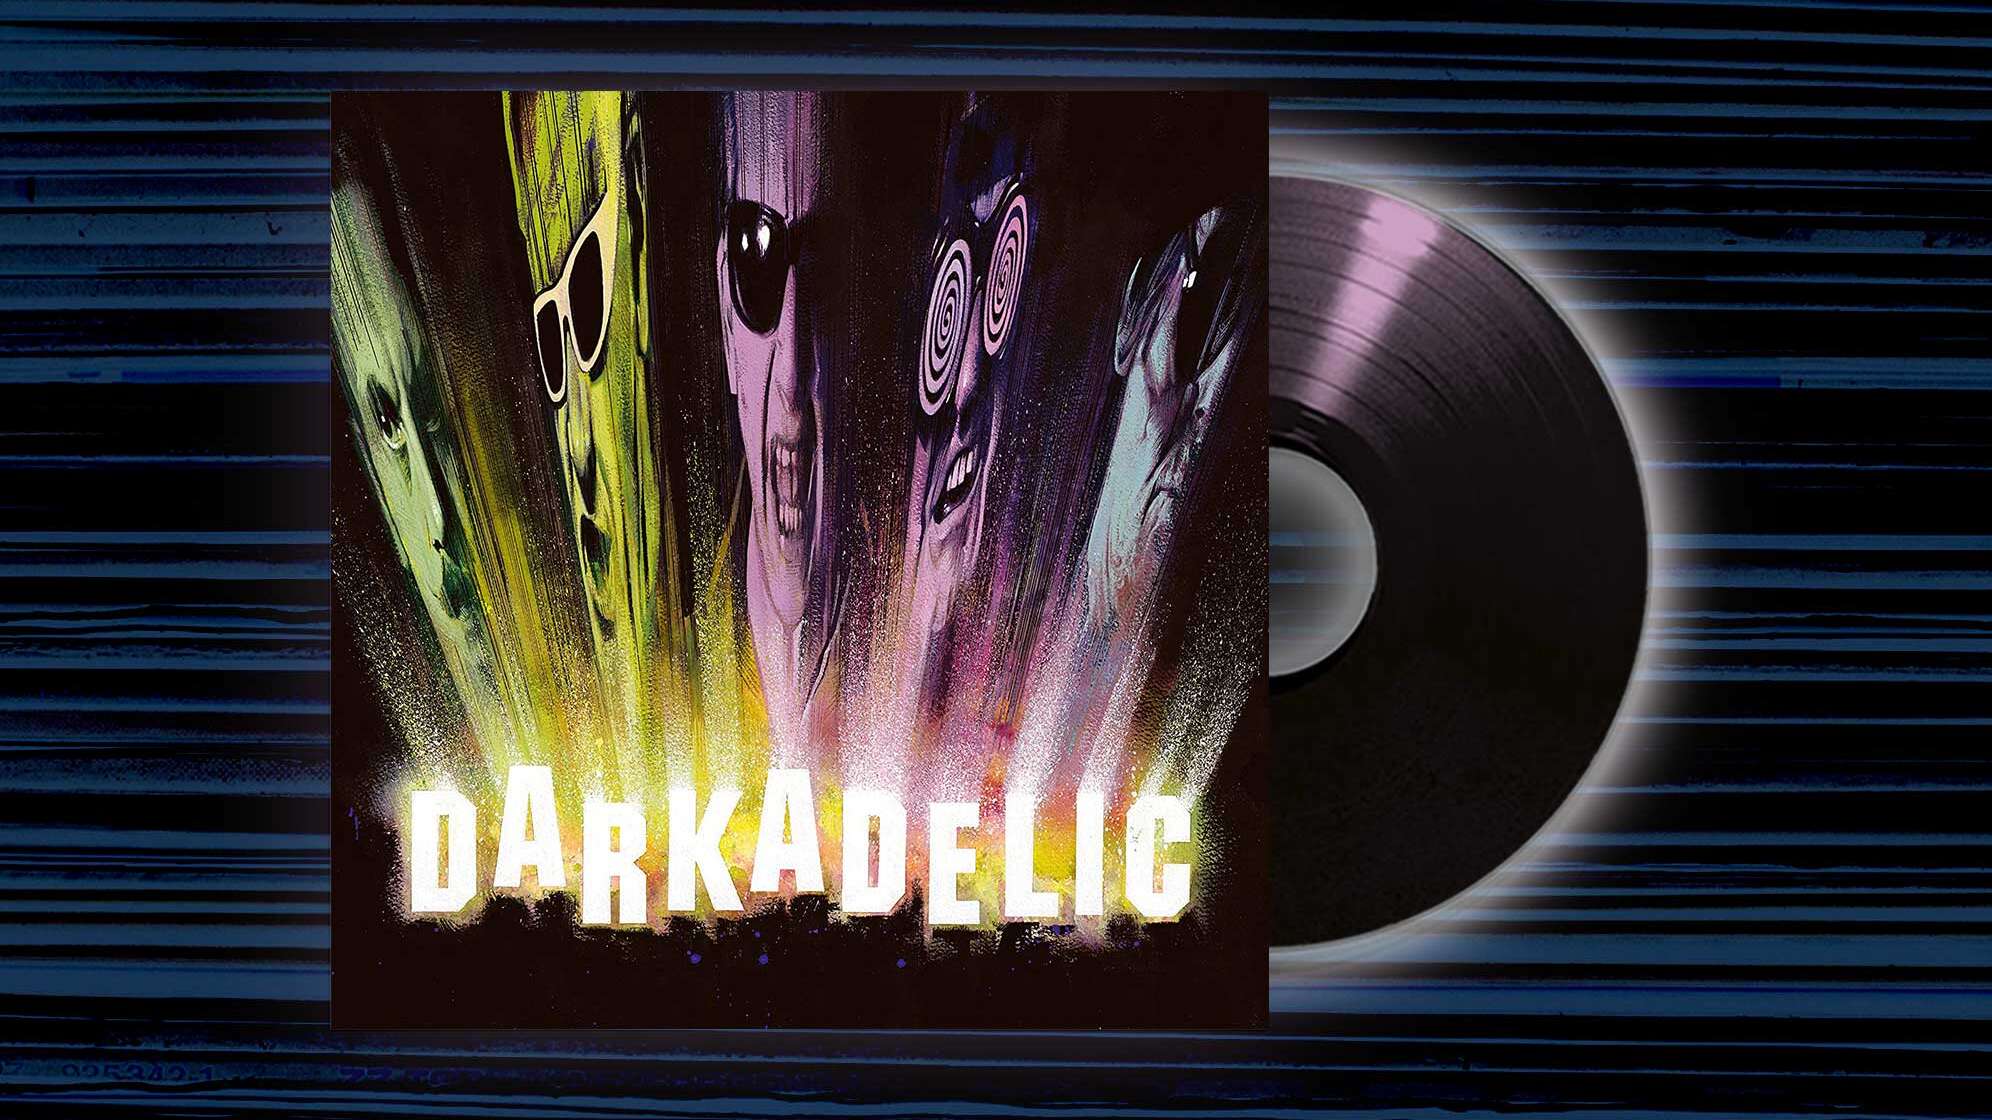 Albumcover von The Damned "Darkadelic"